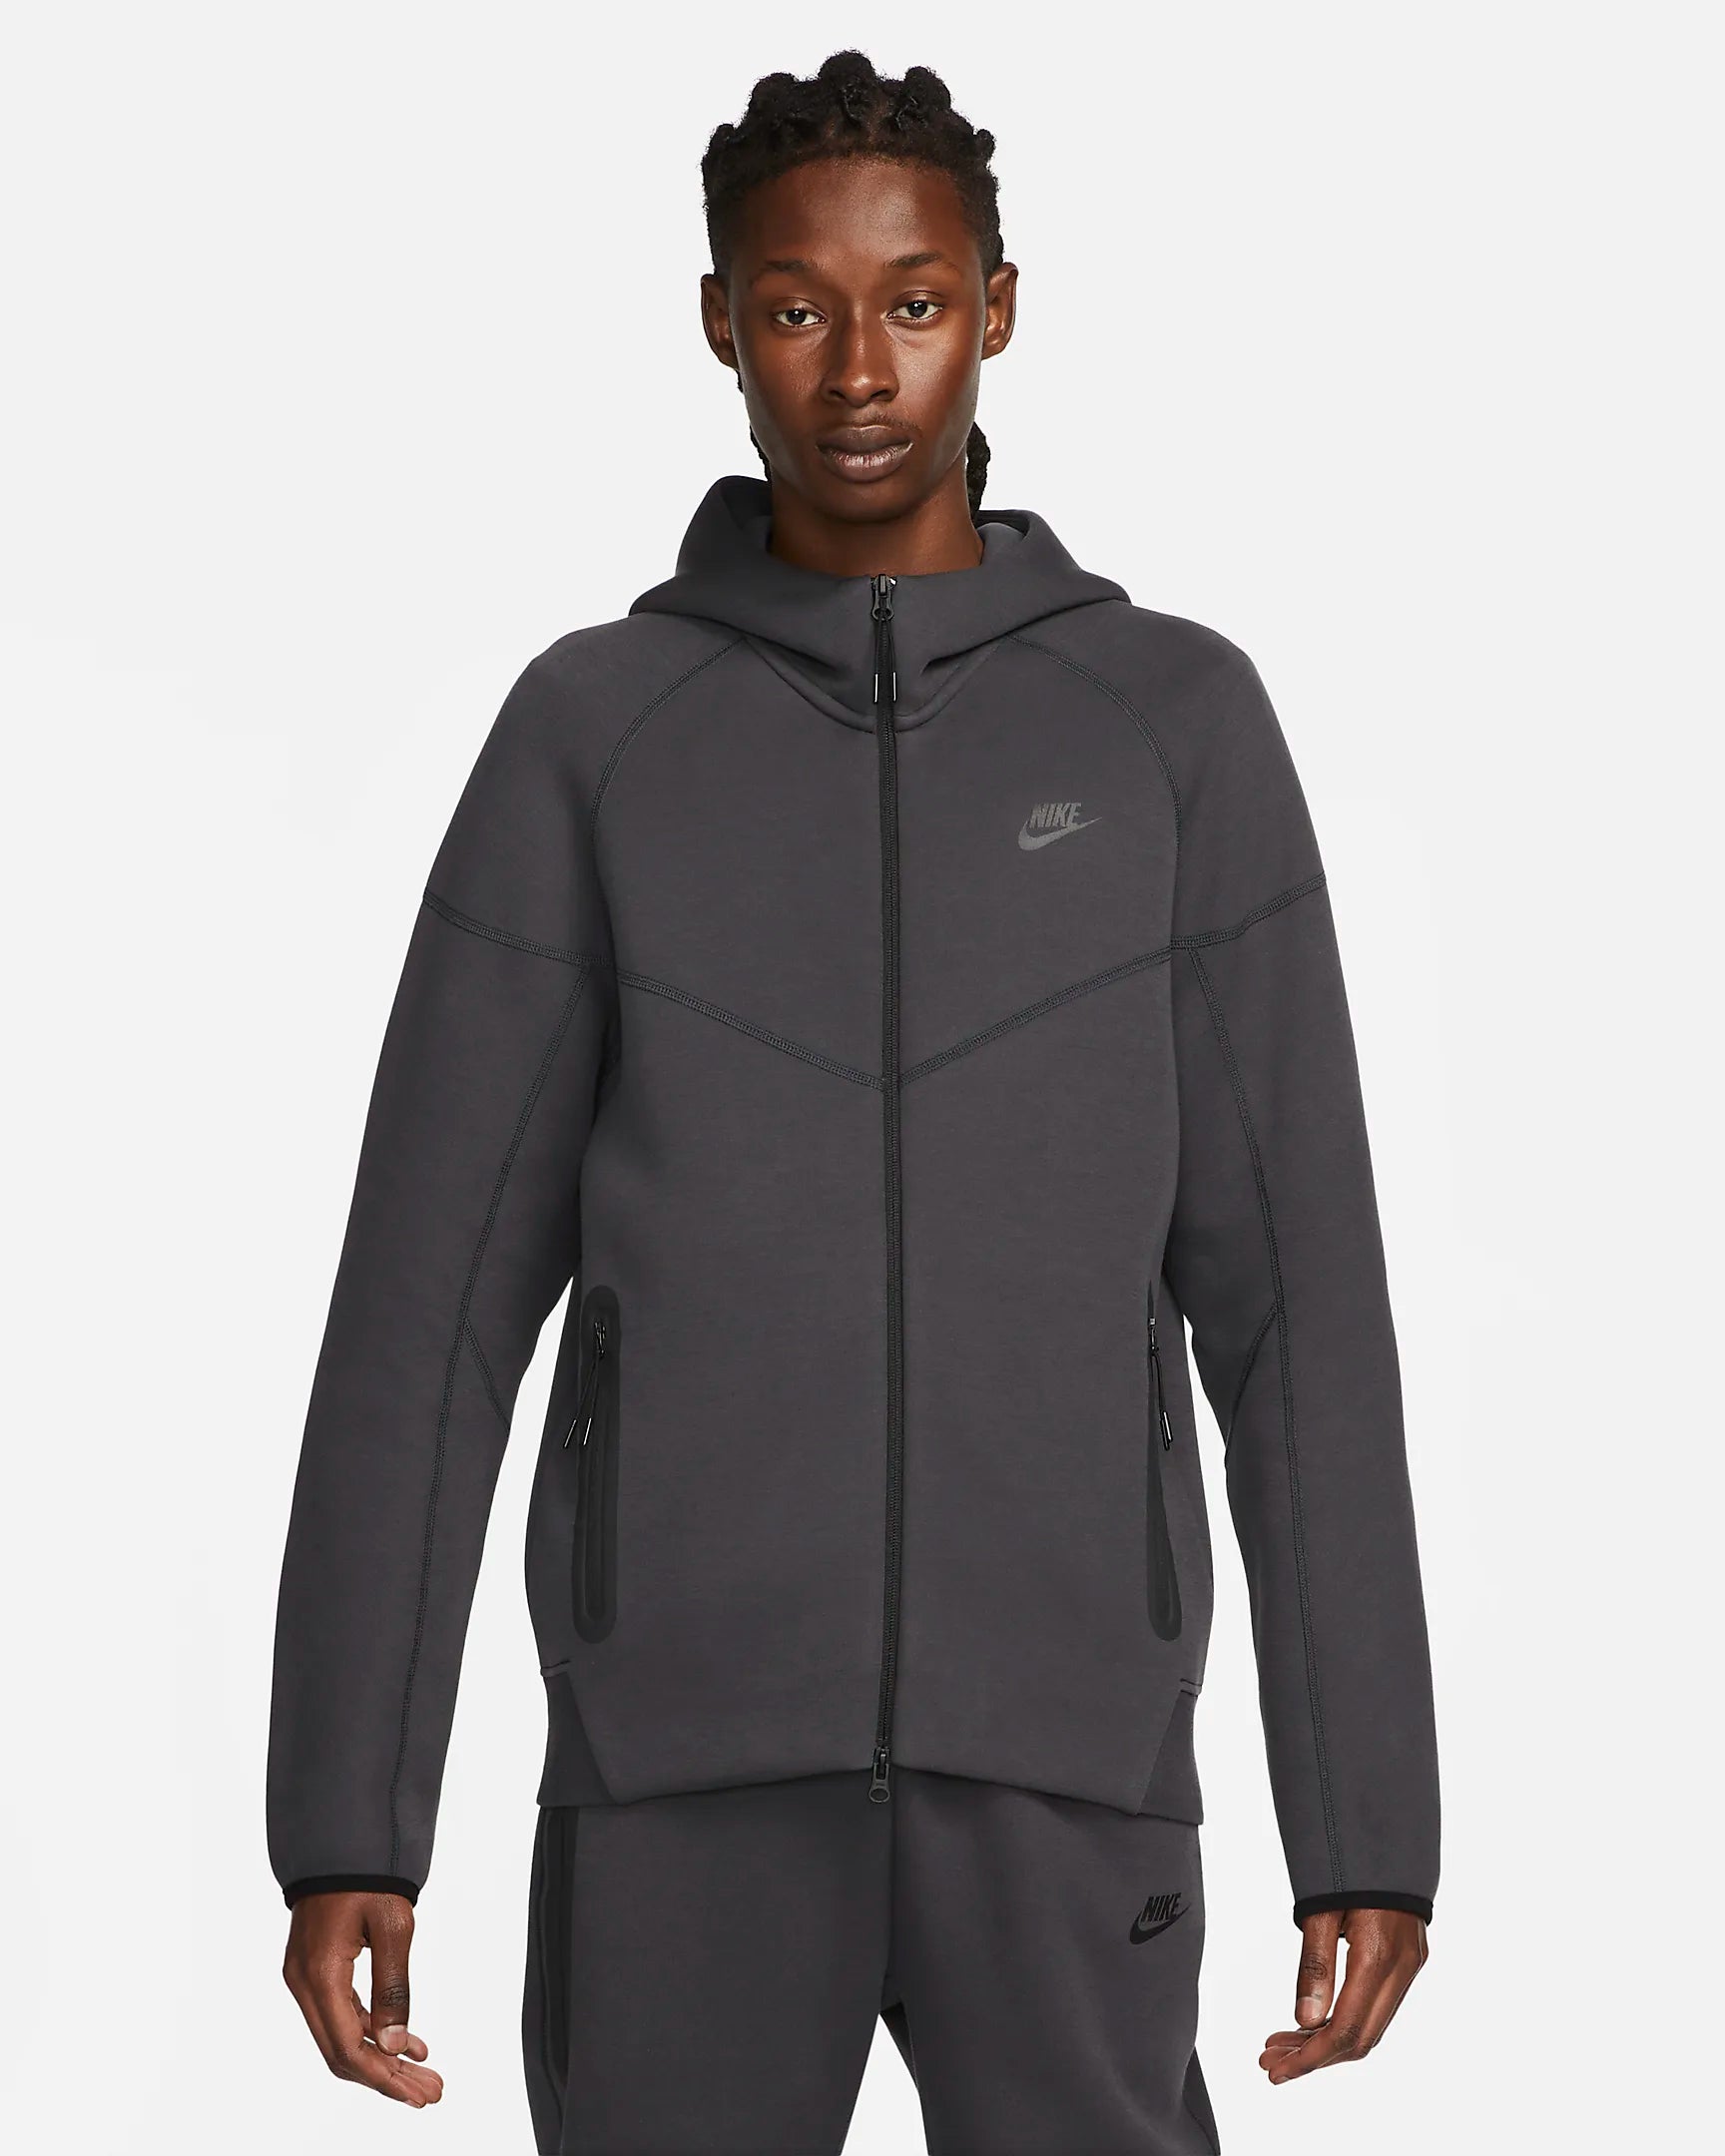 Nike Tech Fleece Windrunner Jacket - Black/Anthracite Gray